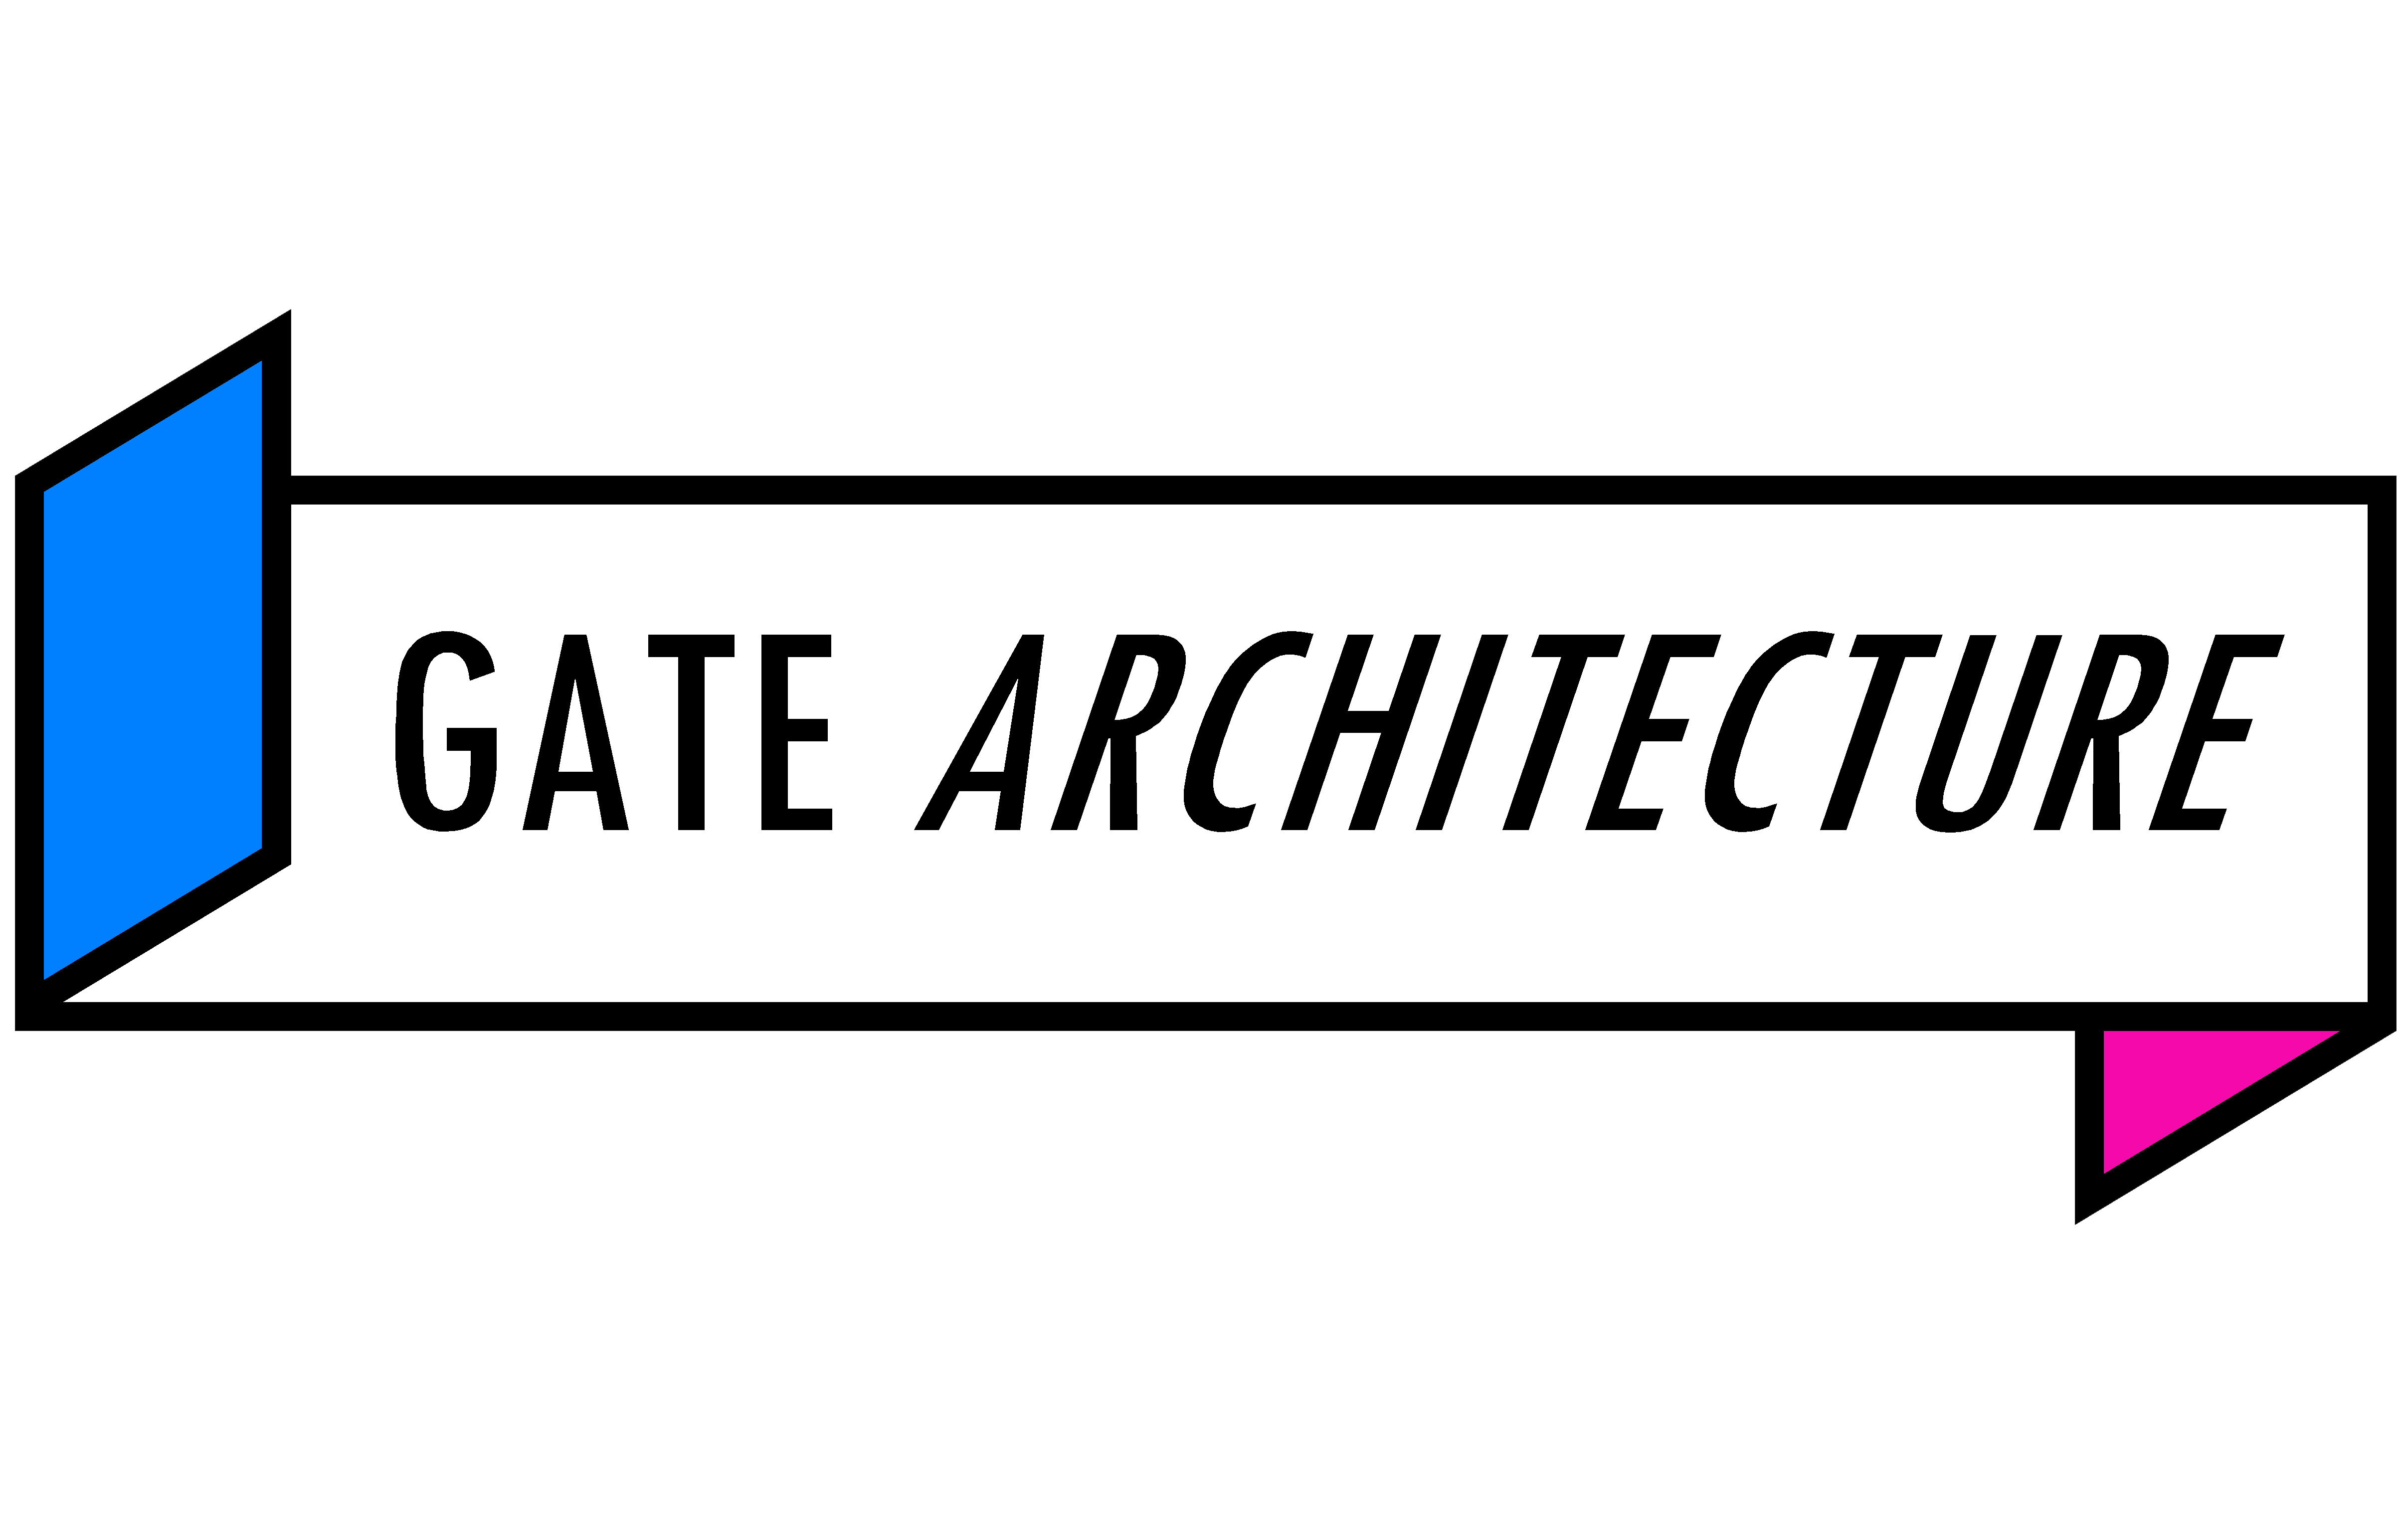 GATE ARCHITECTURE